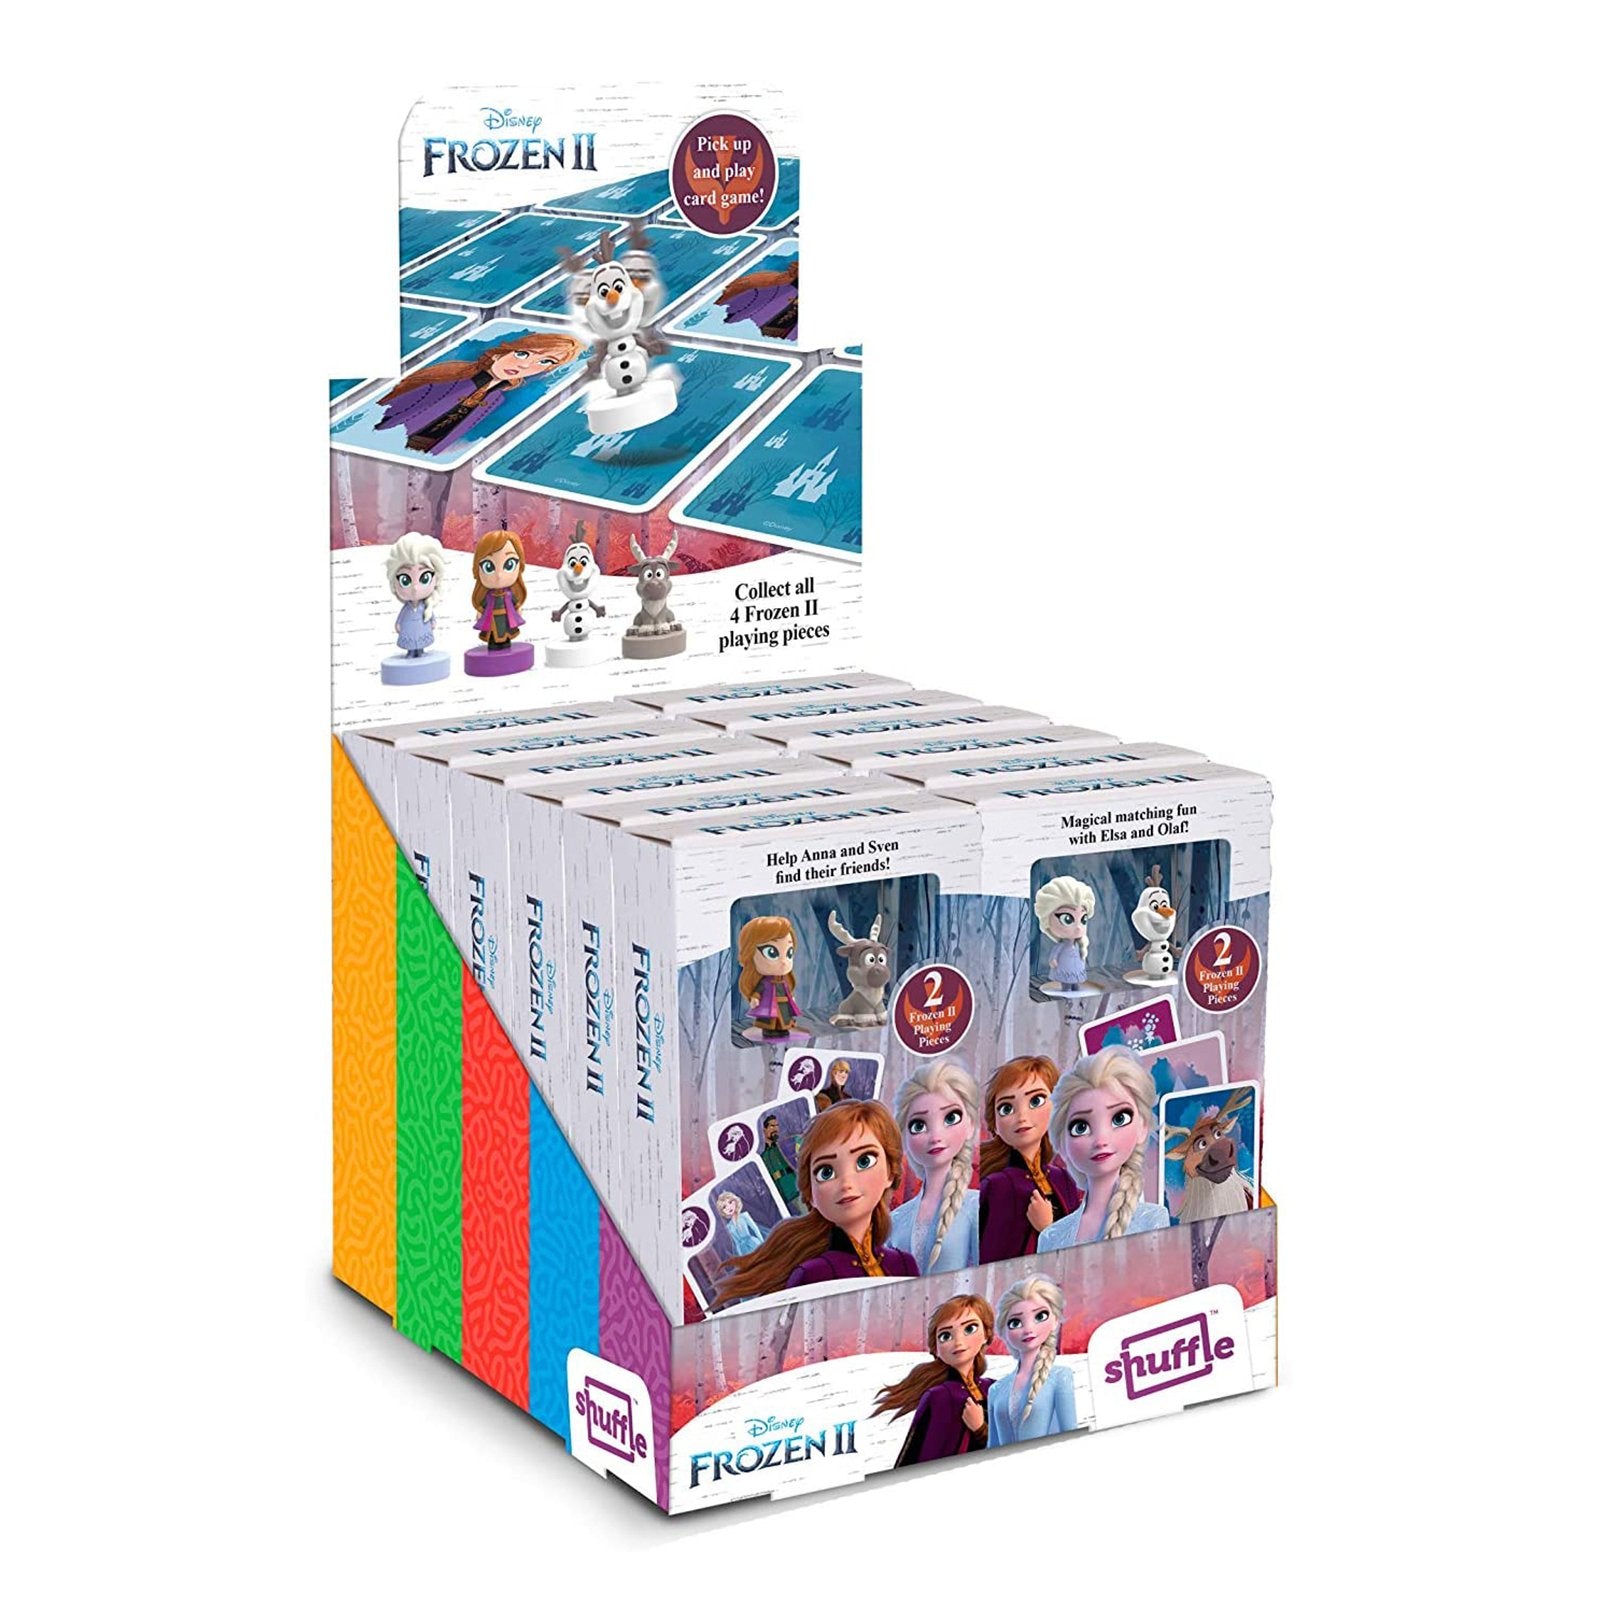 Shuffle Fun Frozen II - Juego de Cartas Infantil Busca la Pareja con Figuras de Anna y Sven